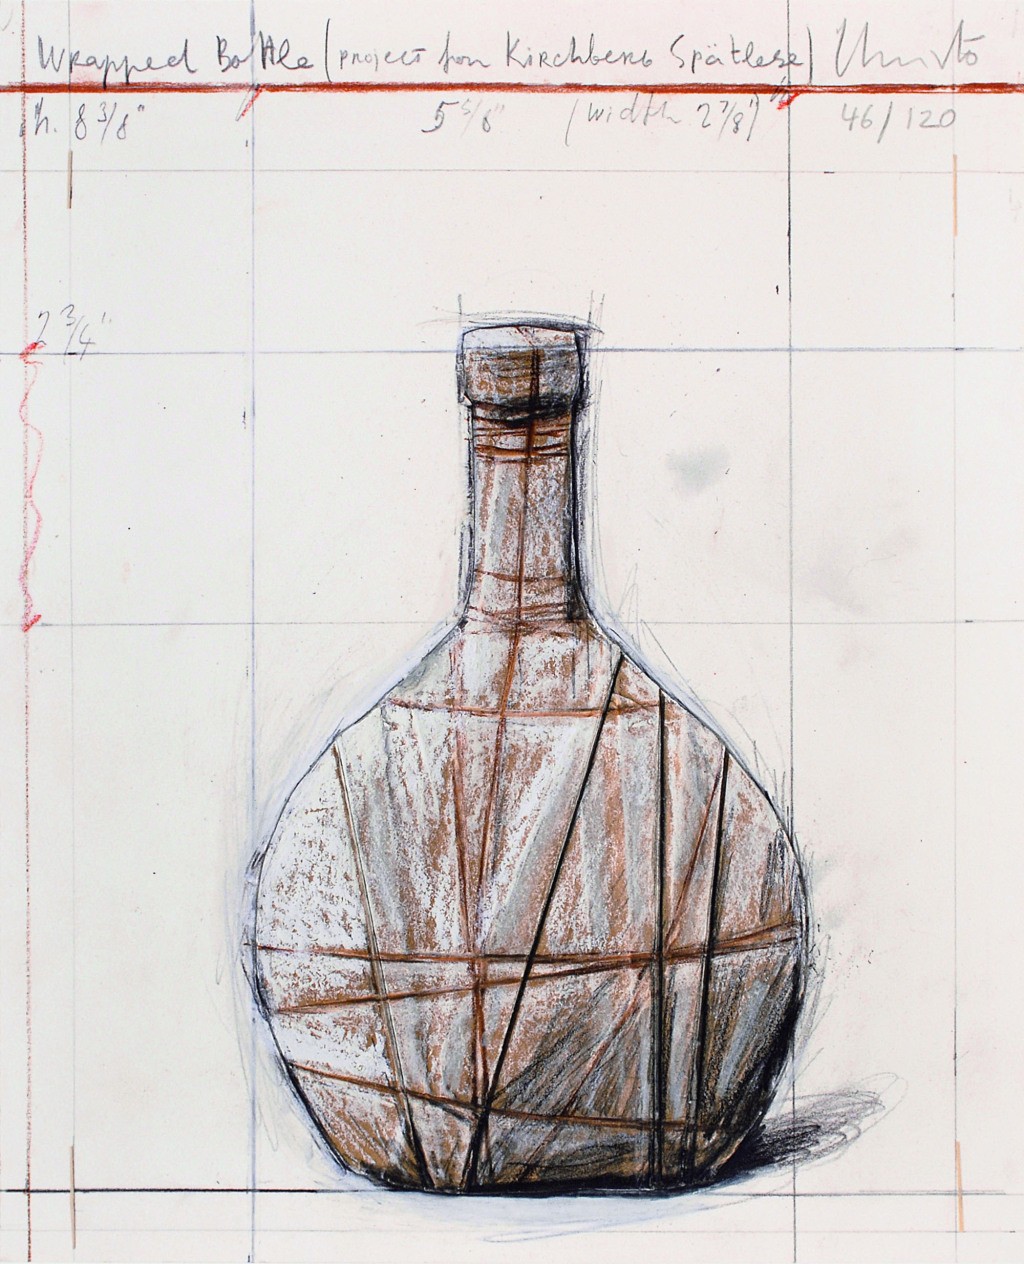 Wrapped Bottle - Project for Kirchberg Spätlese, 2001/2007